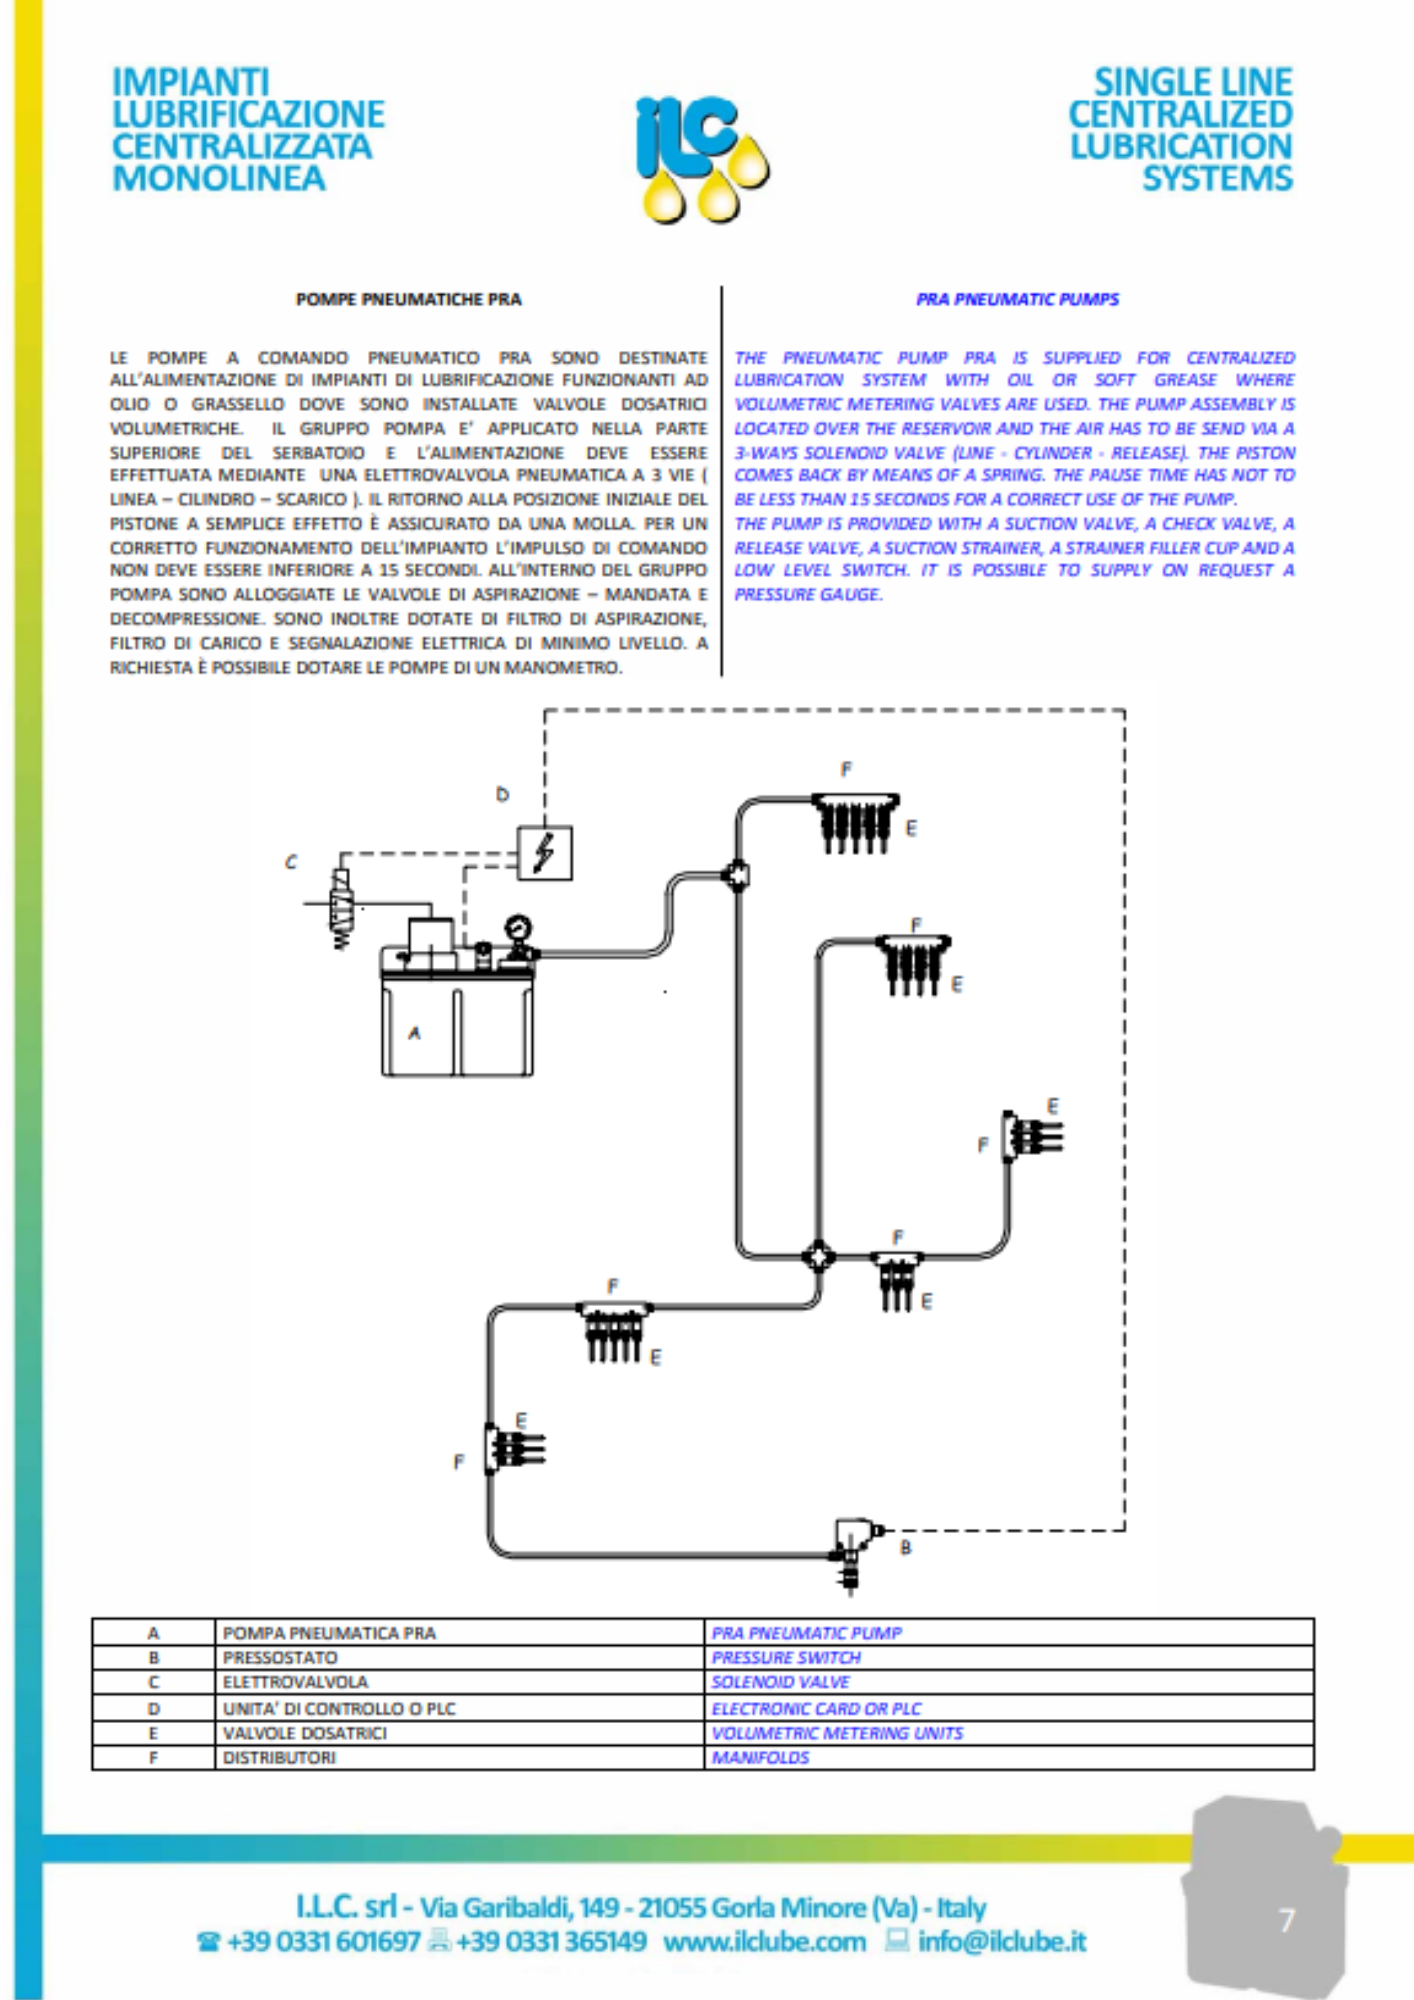 ILC: catalogo lubrificazione volumetrica (serie PRA)